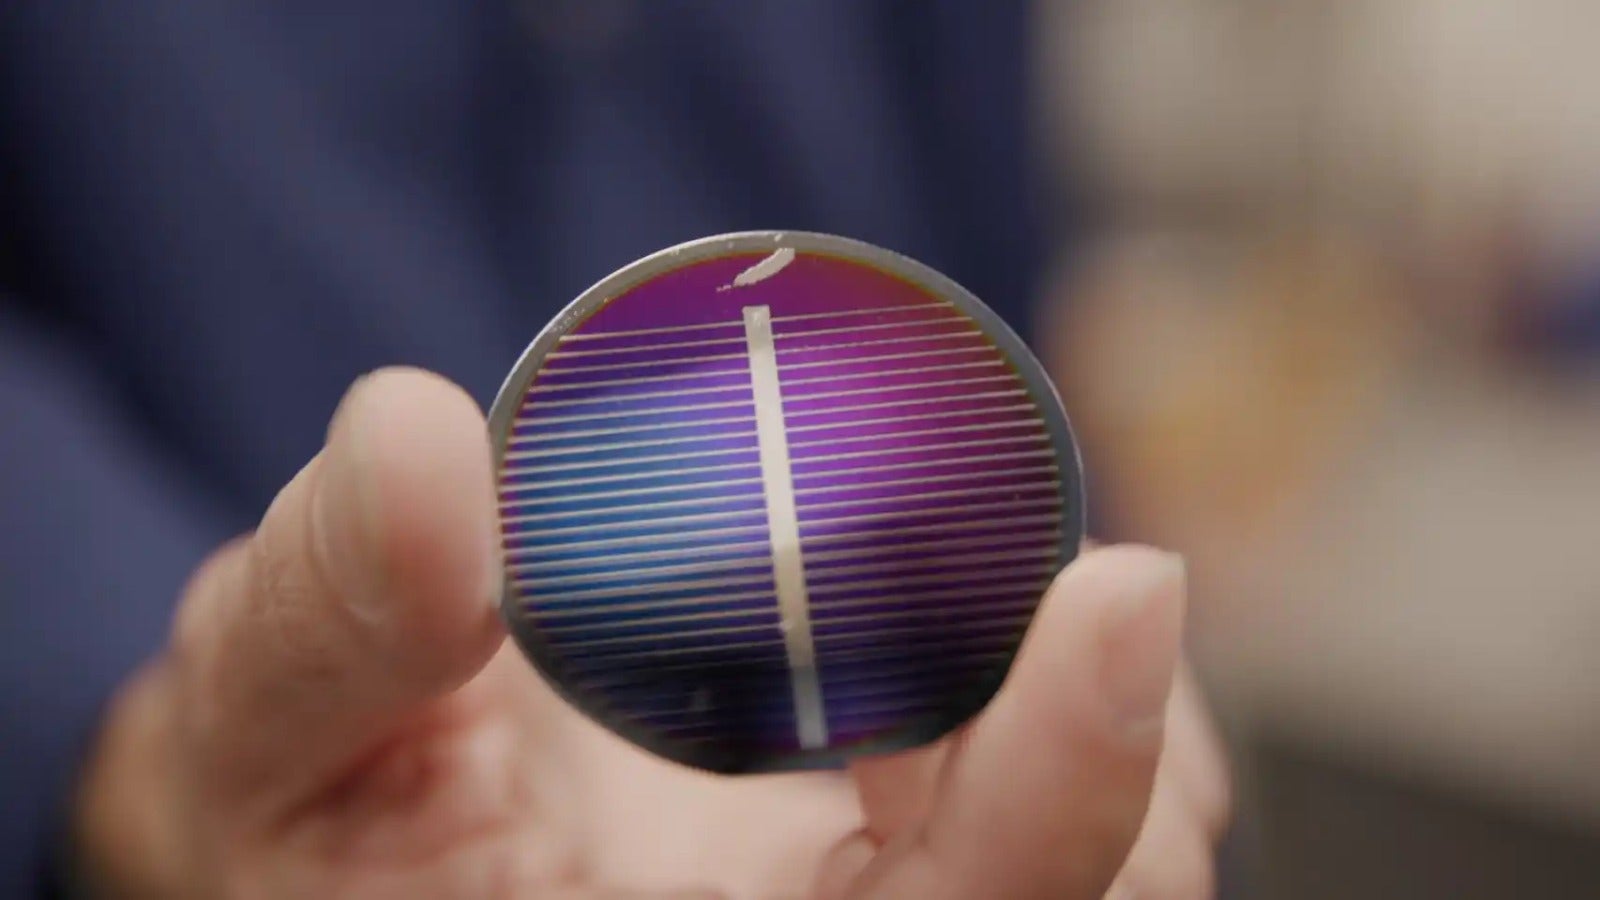 Invento que promete recuperar la vista colocando un sistema de placas solares